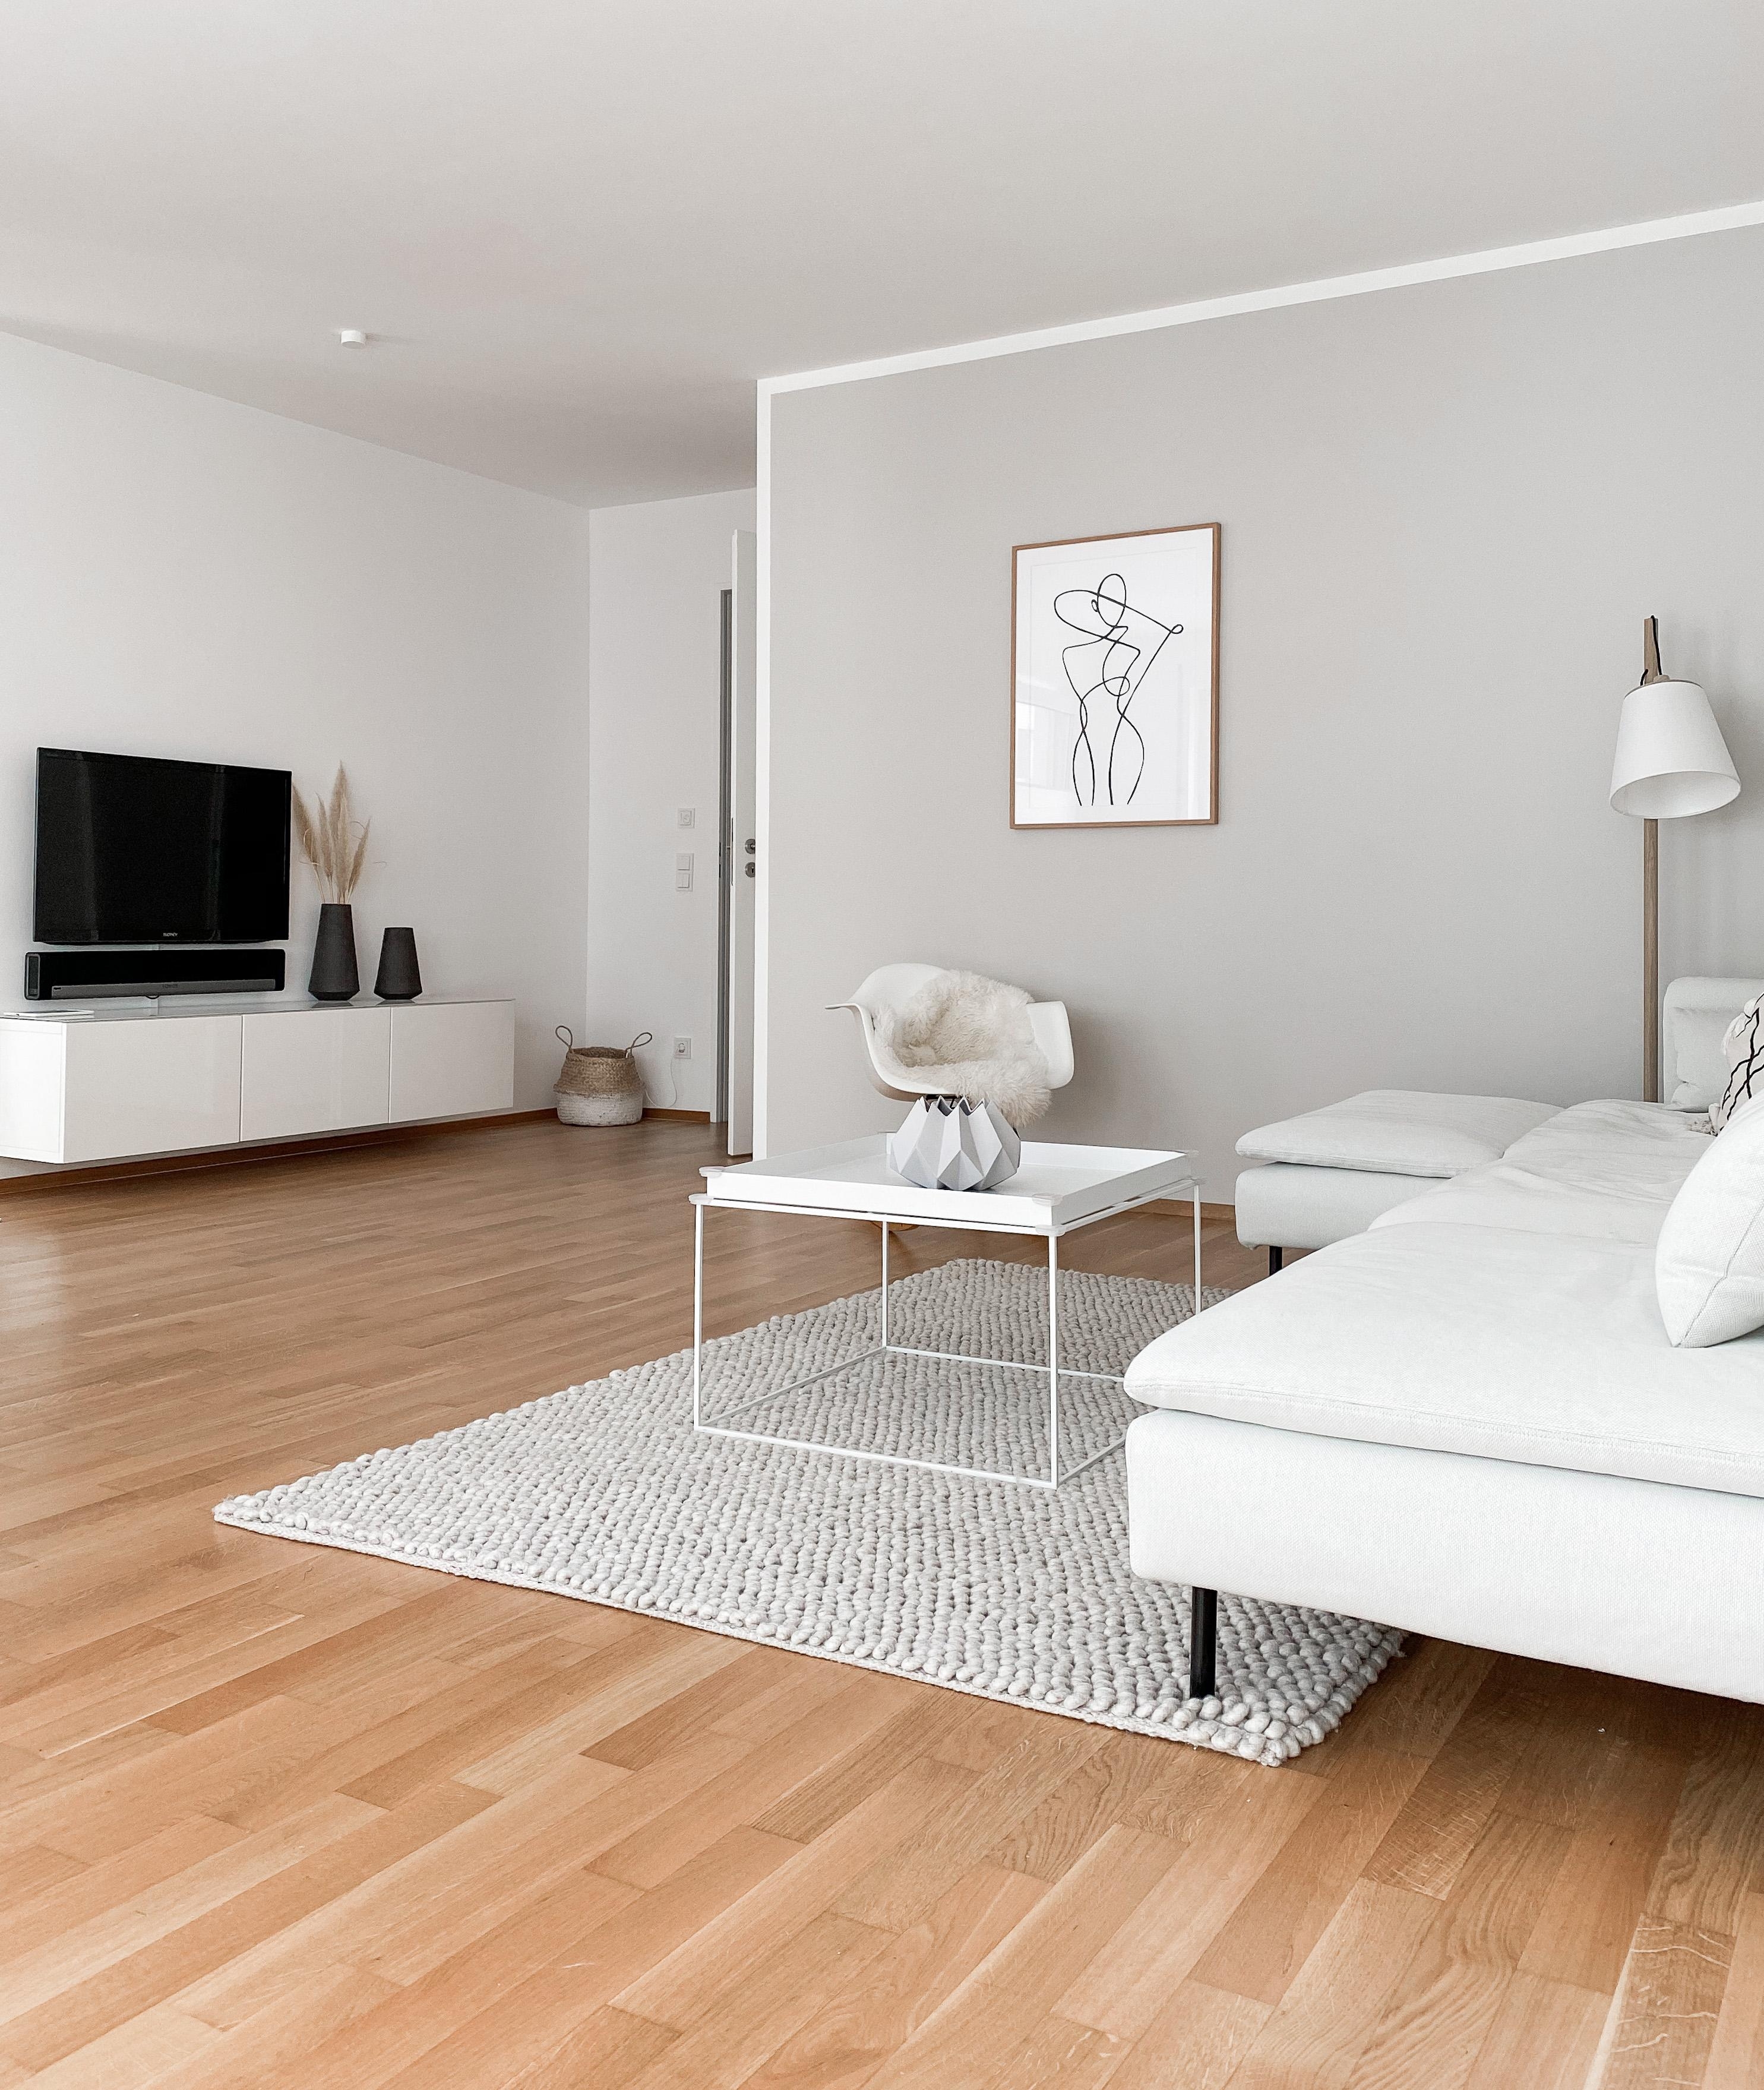 Ich liebe den reduzierten, skandinavischen Einrichtungsstil ♡︎
#skandistyle #whiteliving #livingroominspiration